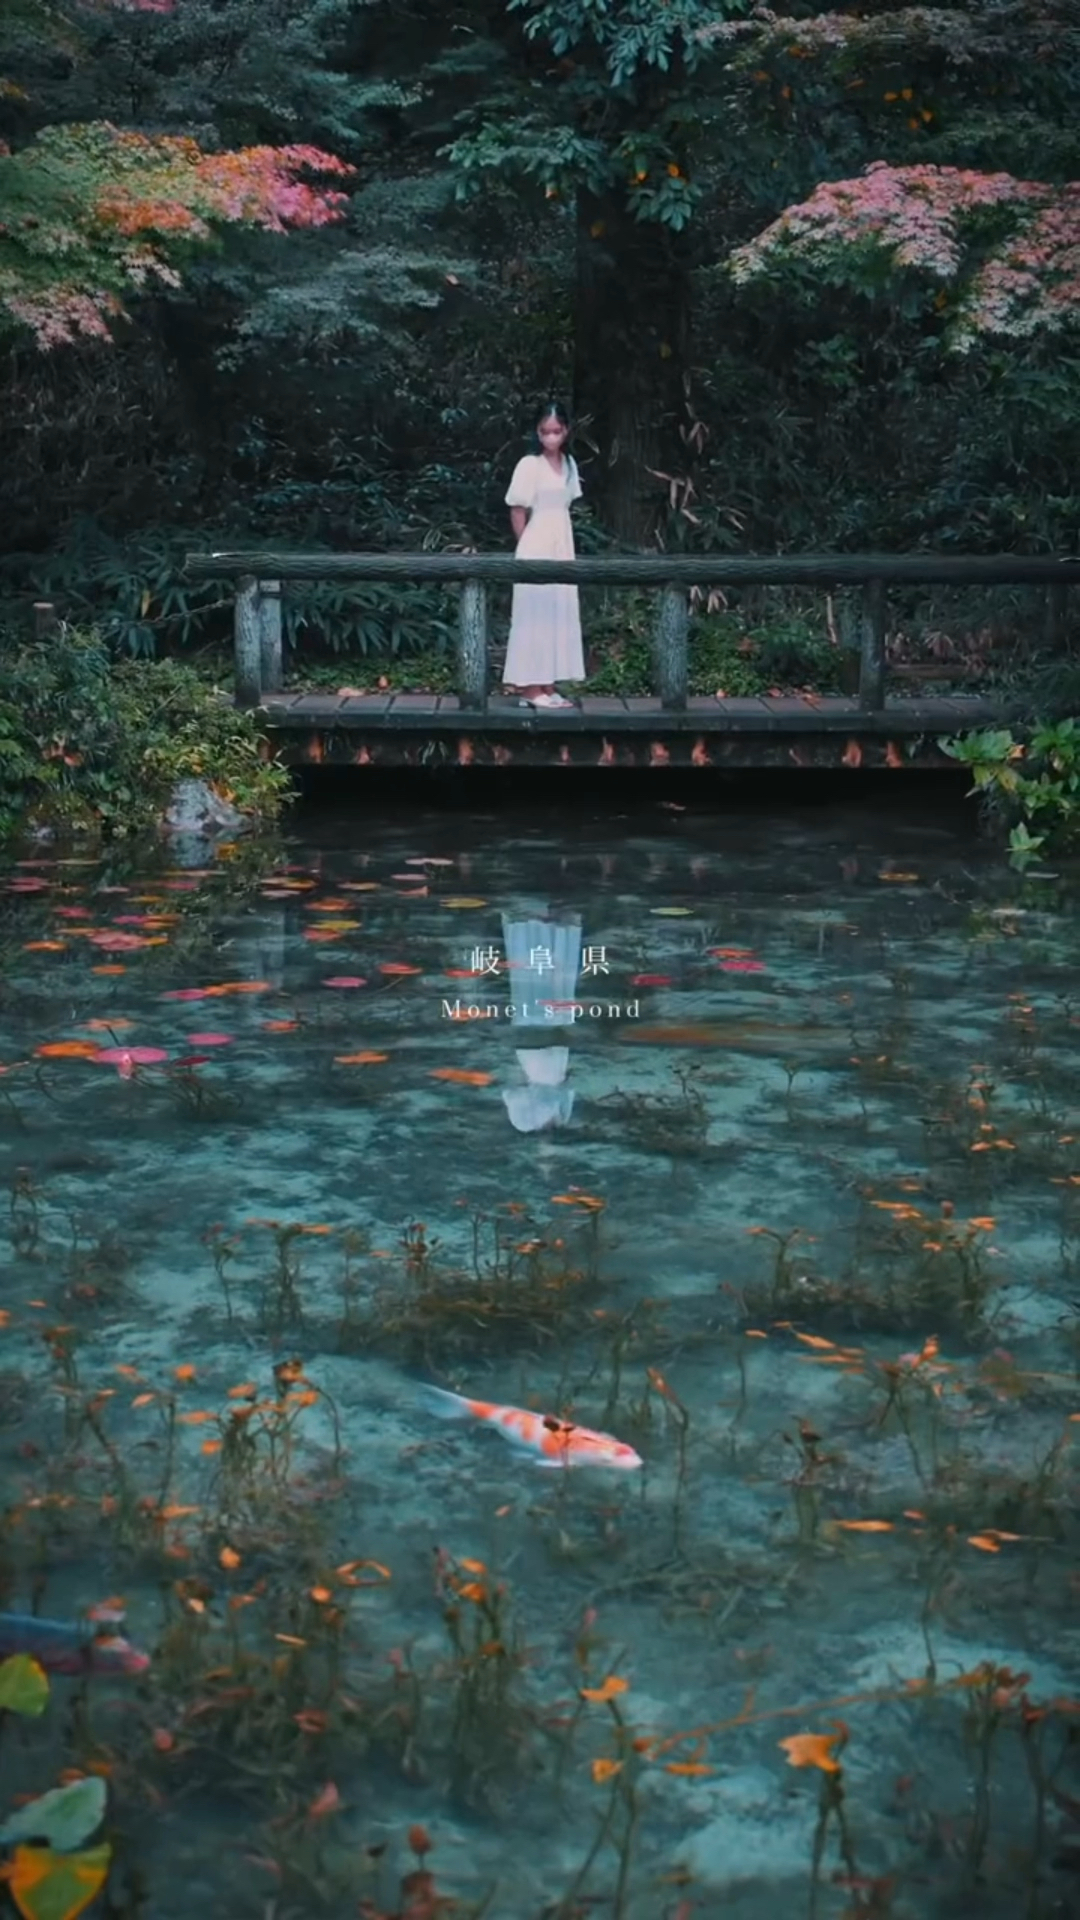 在日本我发现了莫奈大师的莲池